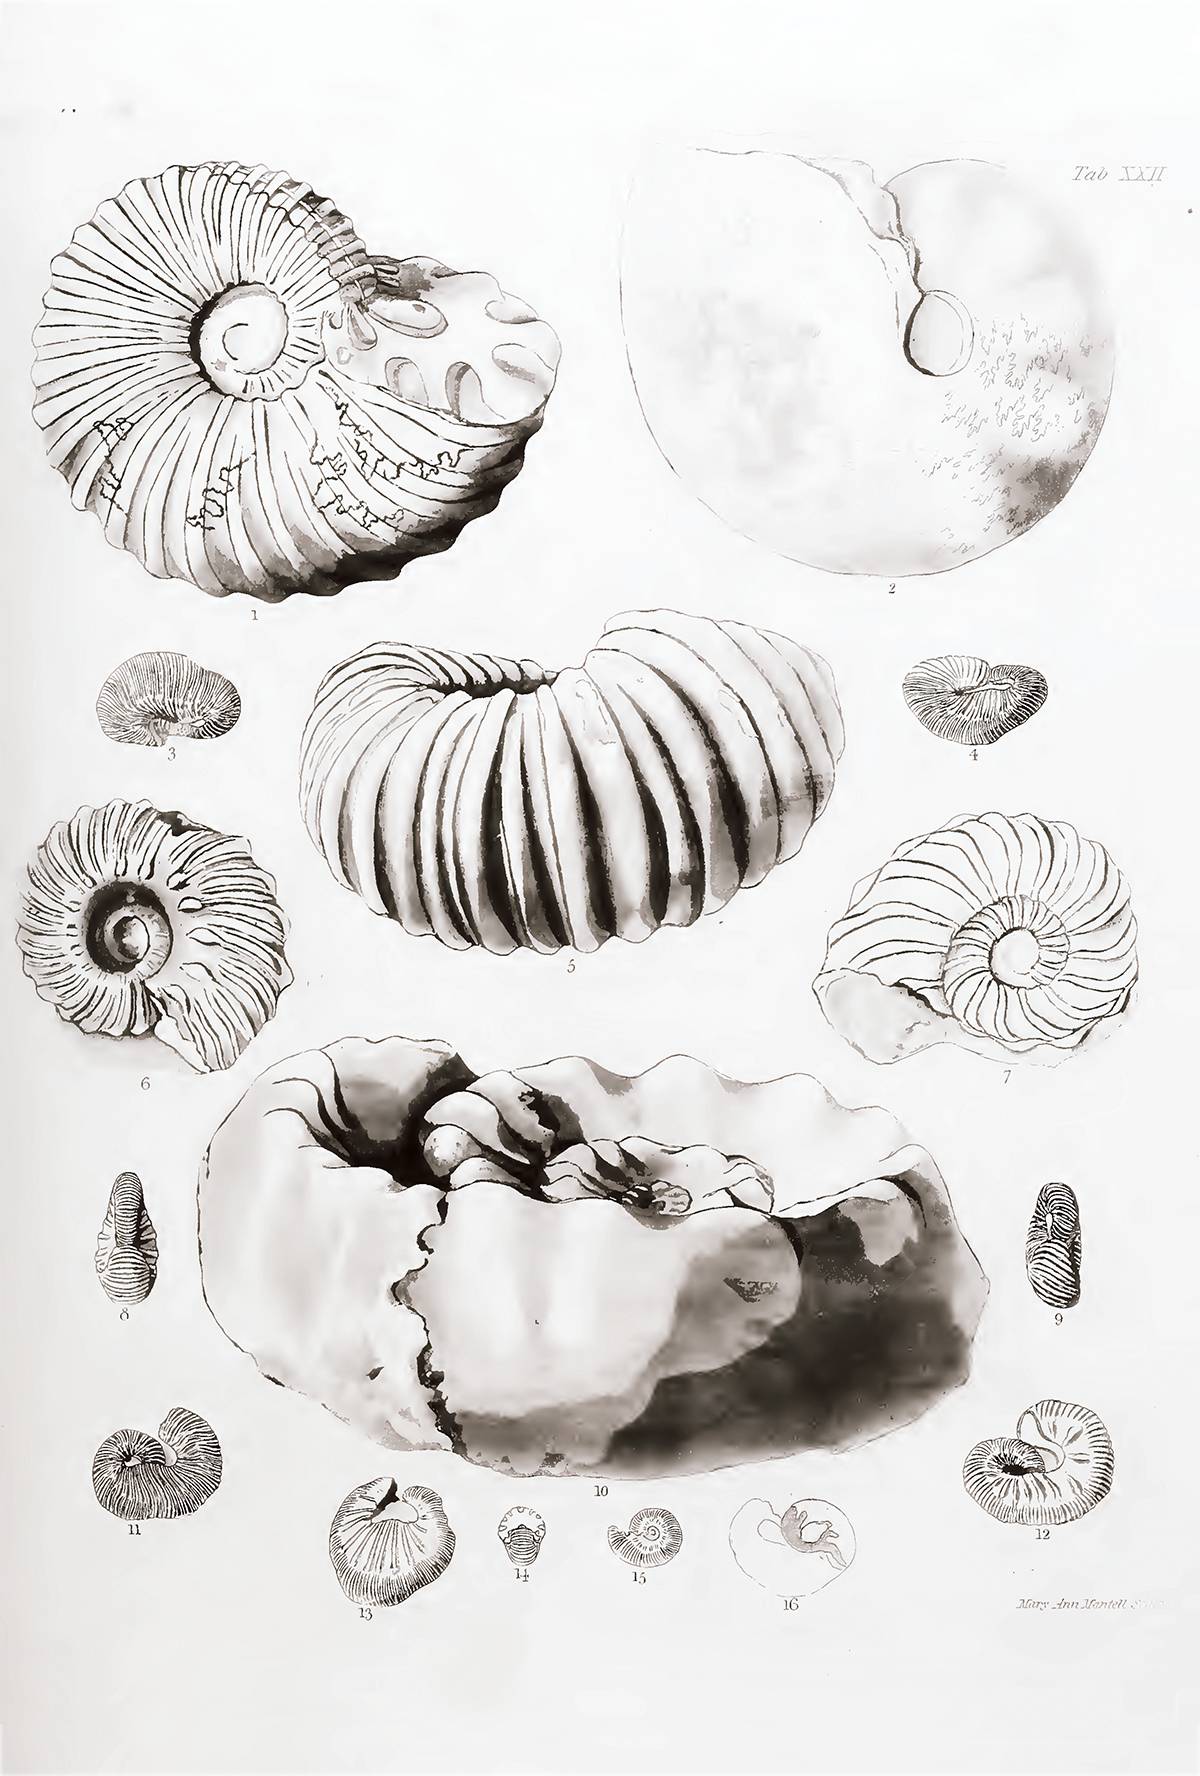 Planche réalisée (et signée, en bas à droite) par Mary Mantell et illustrant des ammonites crétacées d’Angleterre ; cette planche est issue de l’ouvrage de son mari, Gideon Mantell, The Fossils of the South Downs (1822), qu’elle a largement illustré et où elle apparaît comme illustratrice sur la page de garde.